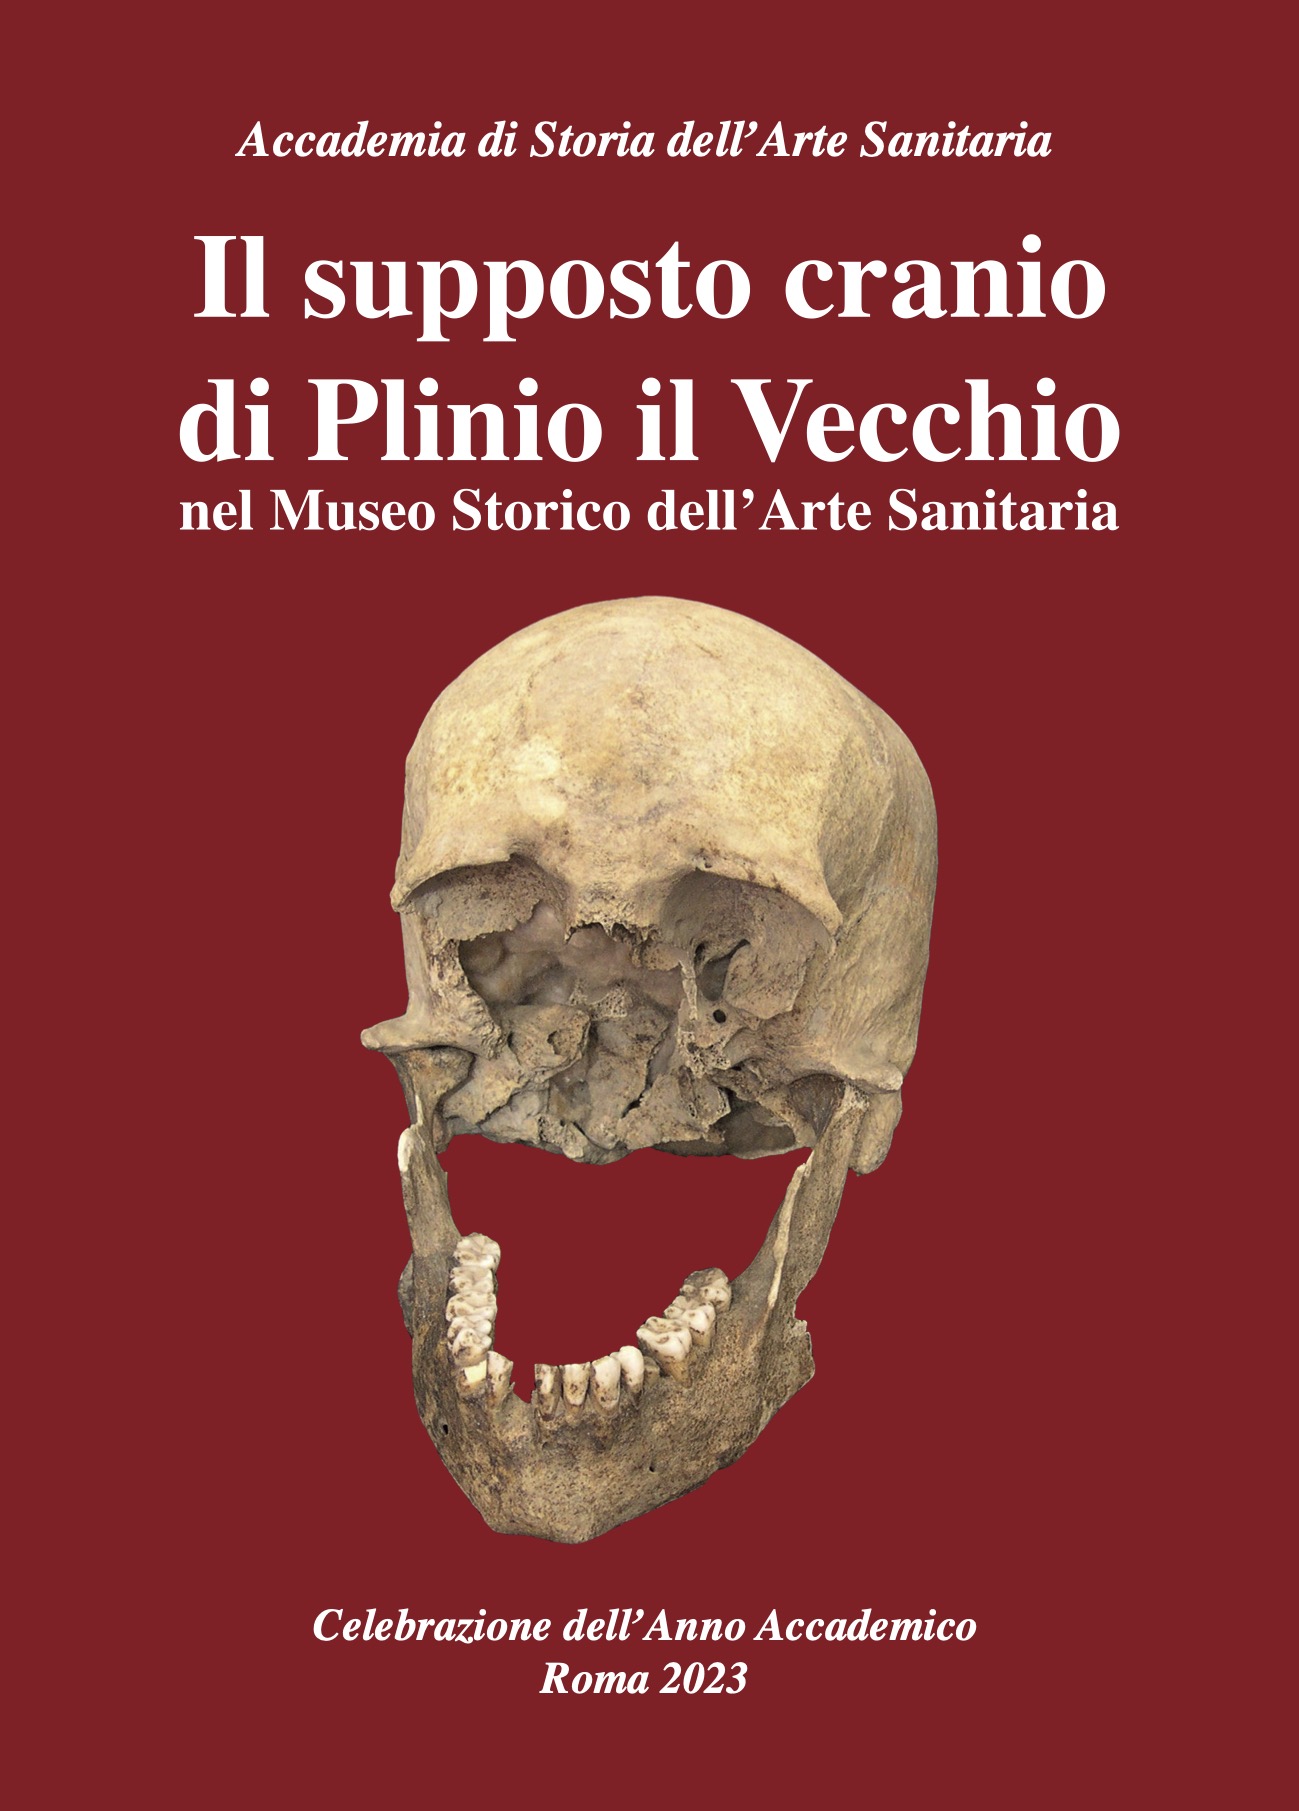 “Il supposto cranio di Plinio il Vecchio” di Gaspare Baggieri